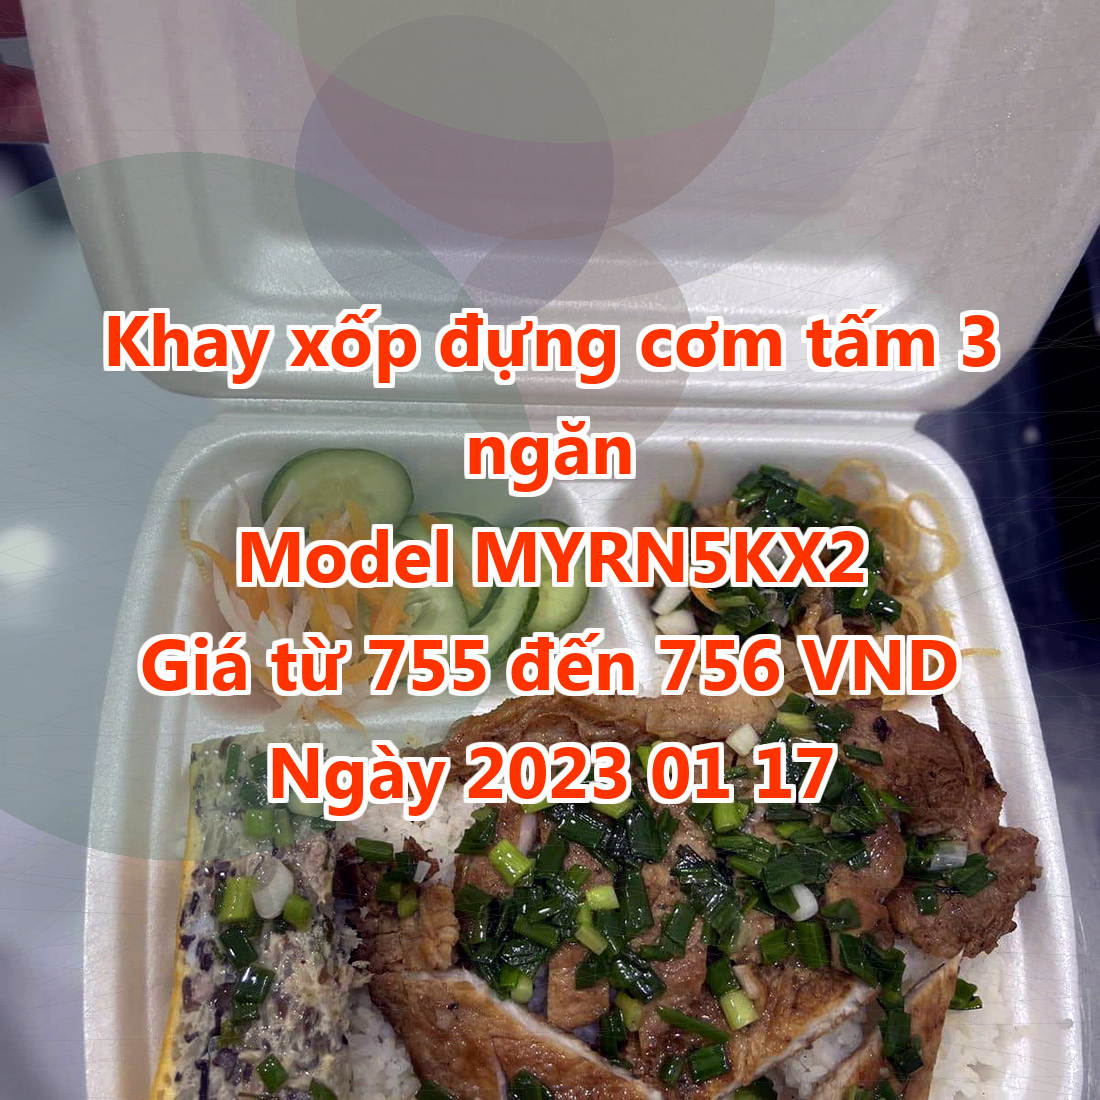 Khay xốp đựng cơm tấm 3 ngăn - Model MYRN5KX2 - Giá 755 VND